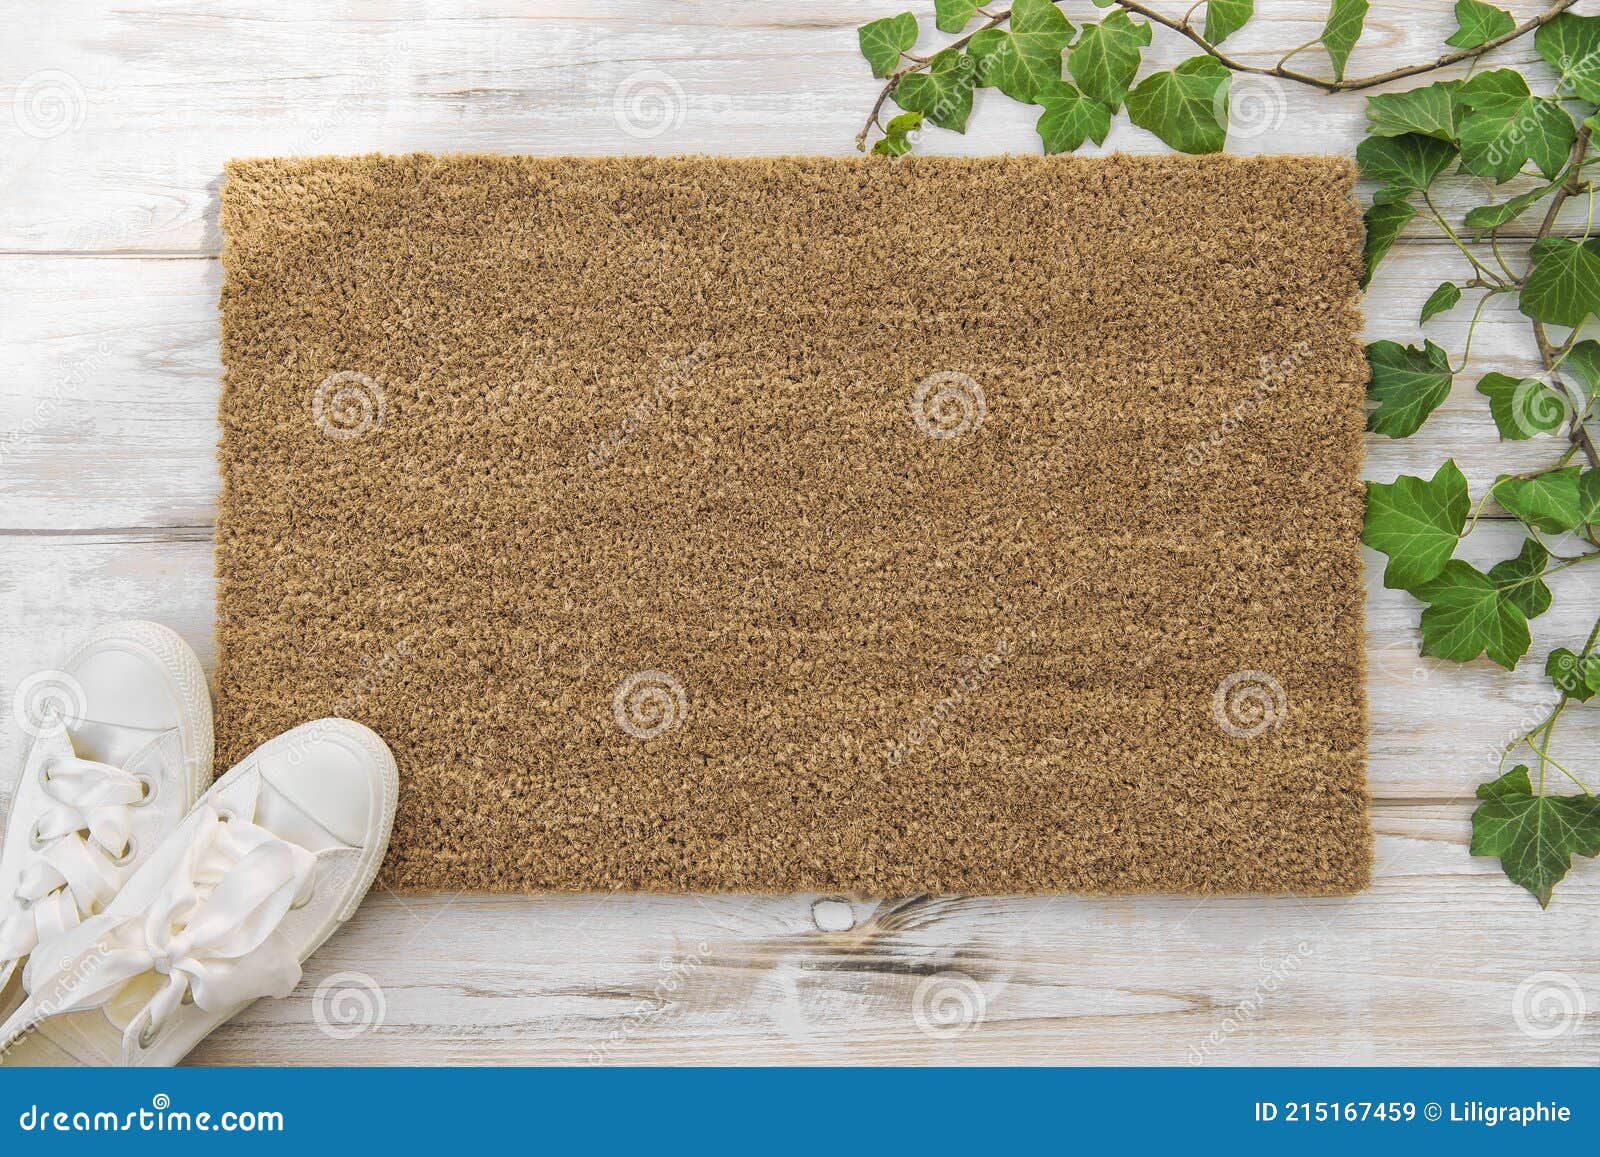 coir doormat mockup green plant wooden background